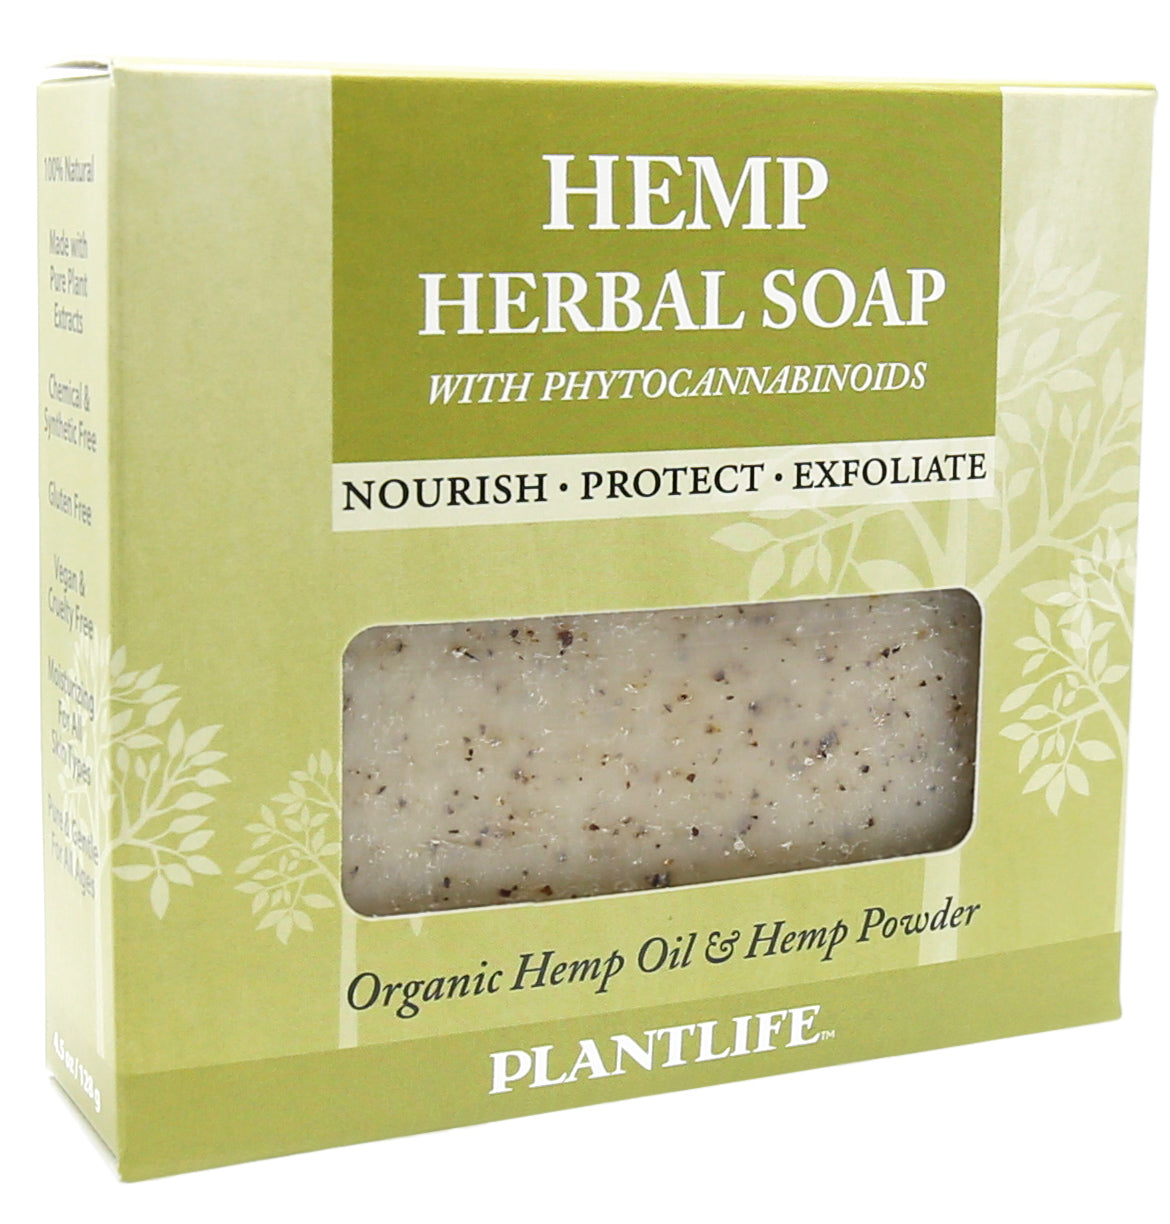 Hemp Herbal Soap